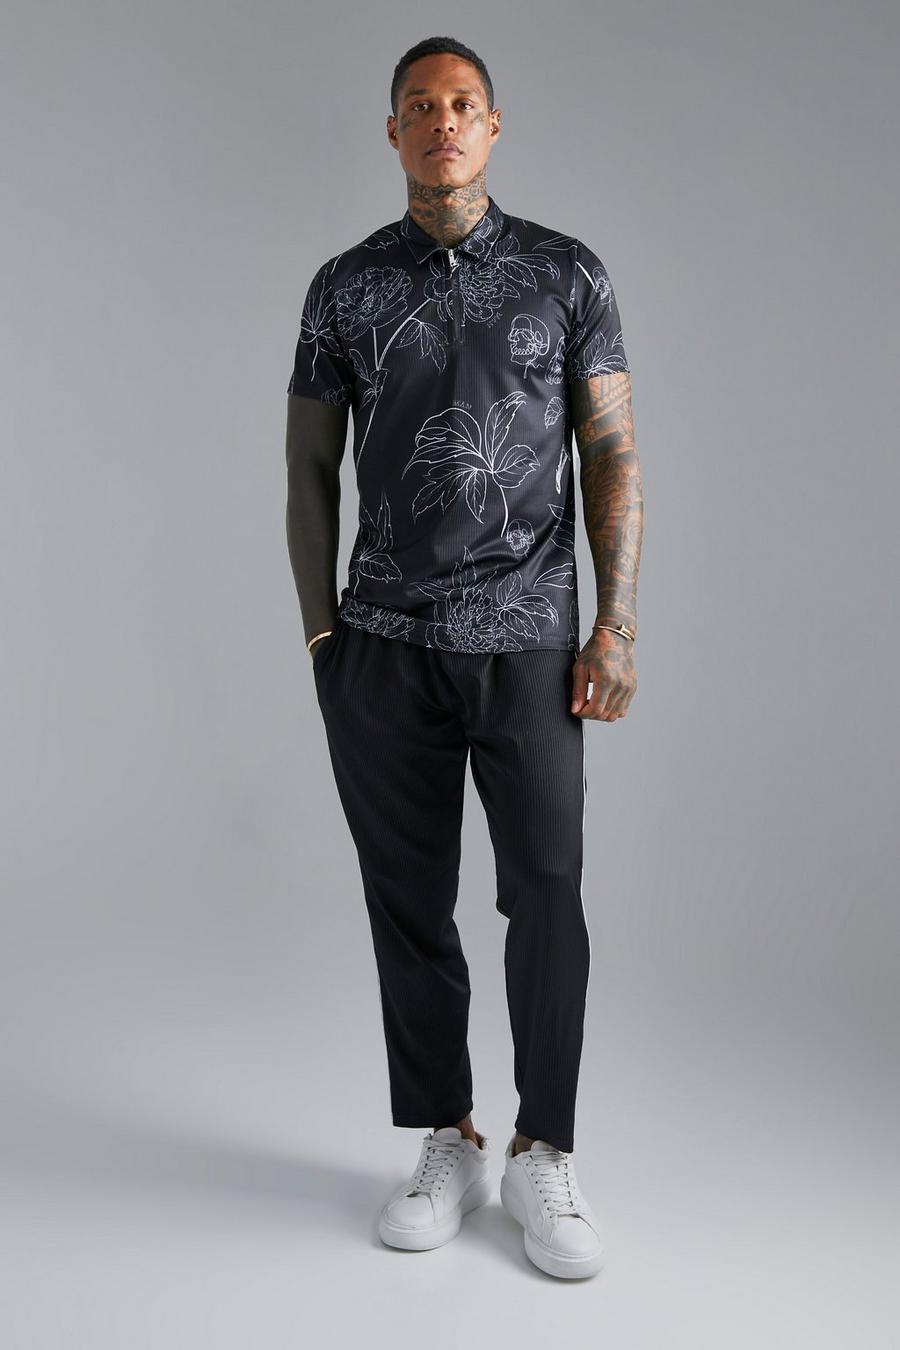 Black svart Slim fit mönstrad t-shirt och mjukisbyxor